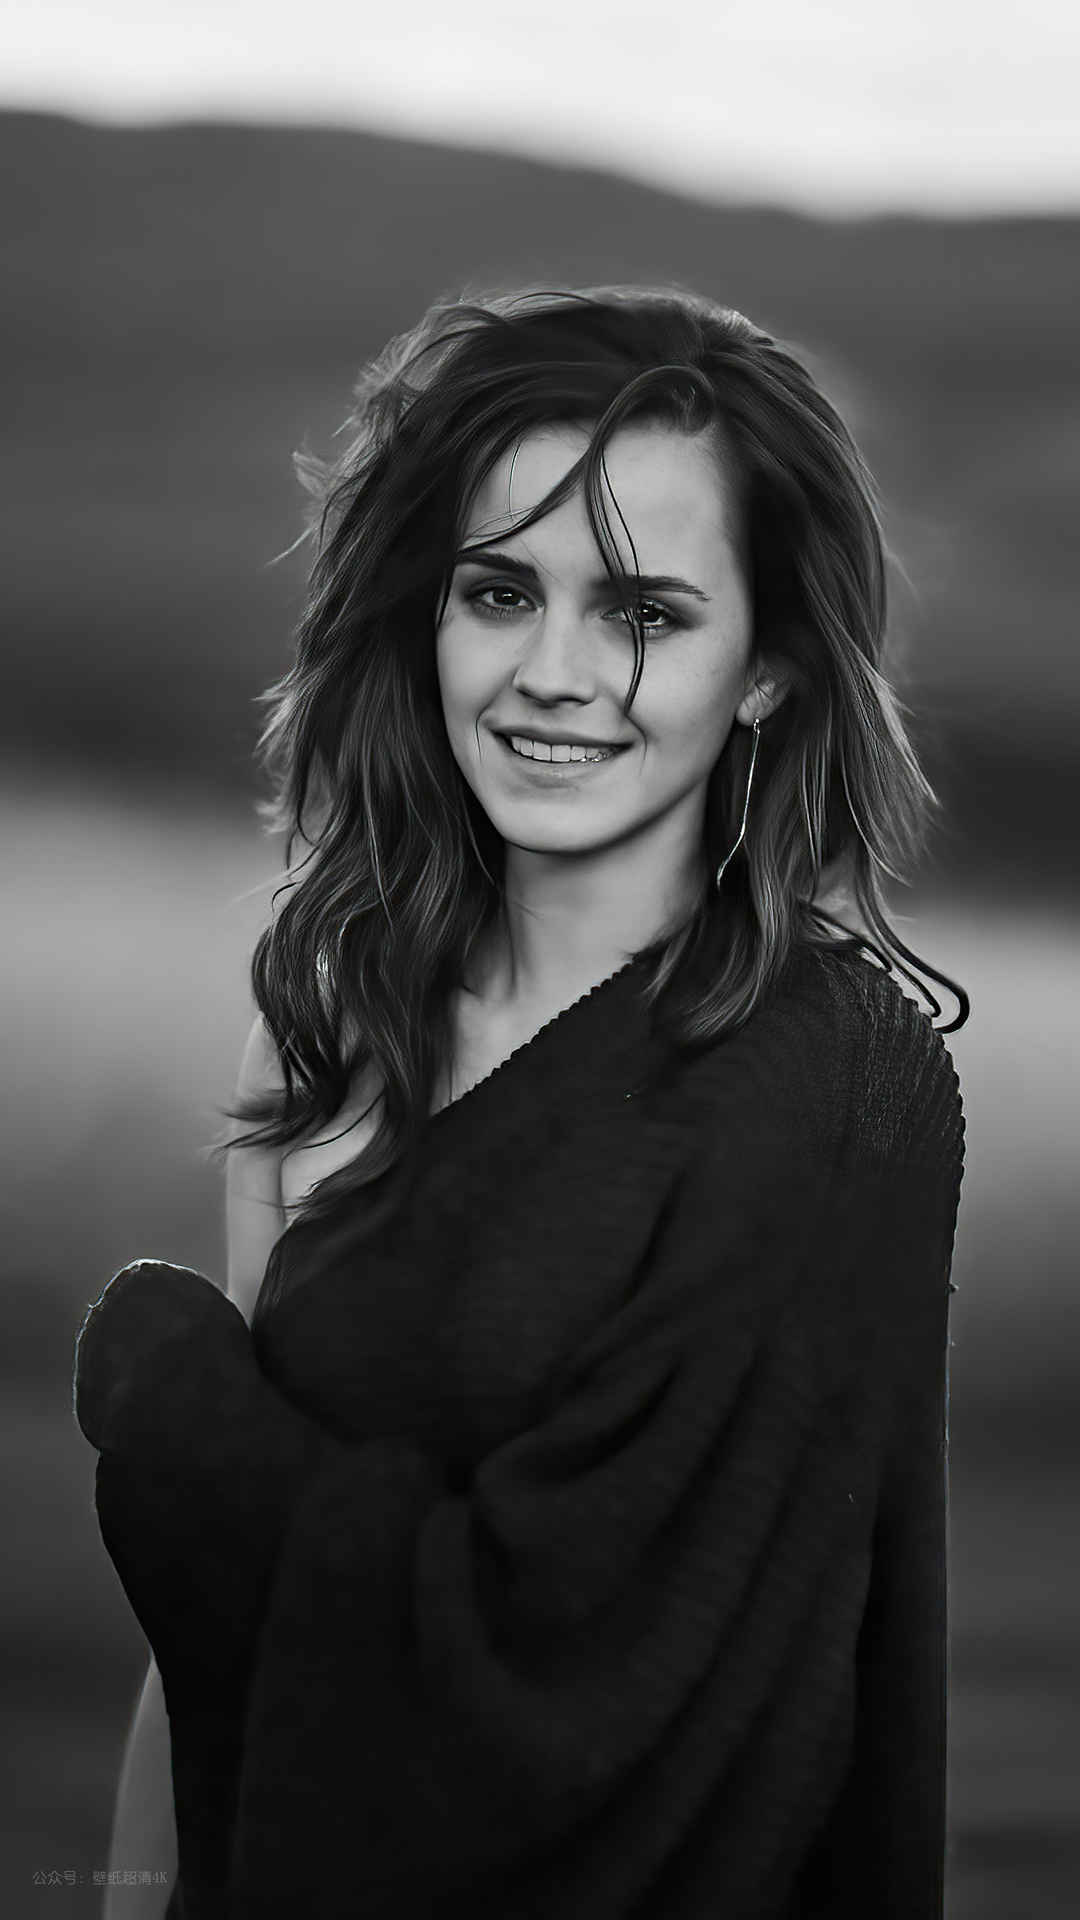 艾玛·沃特森(Emma Watson) 黑白写真手机壁纸